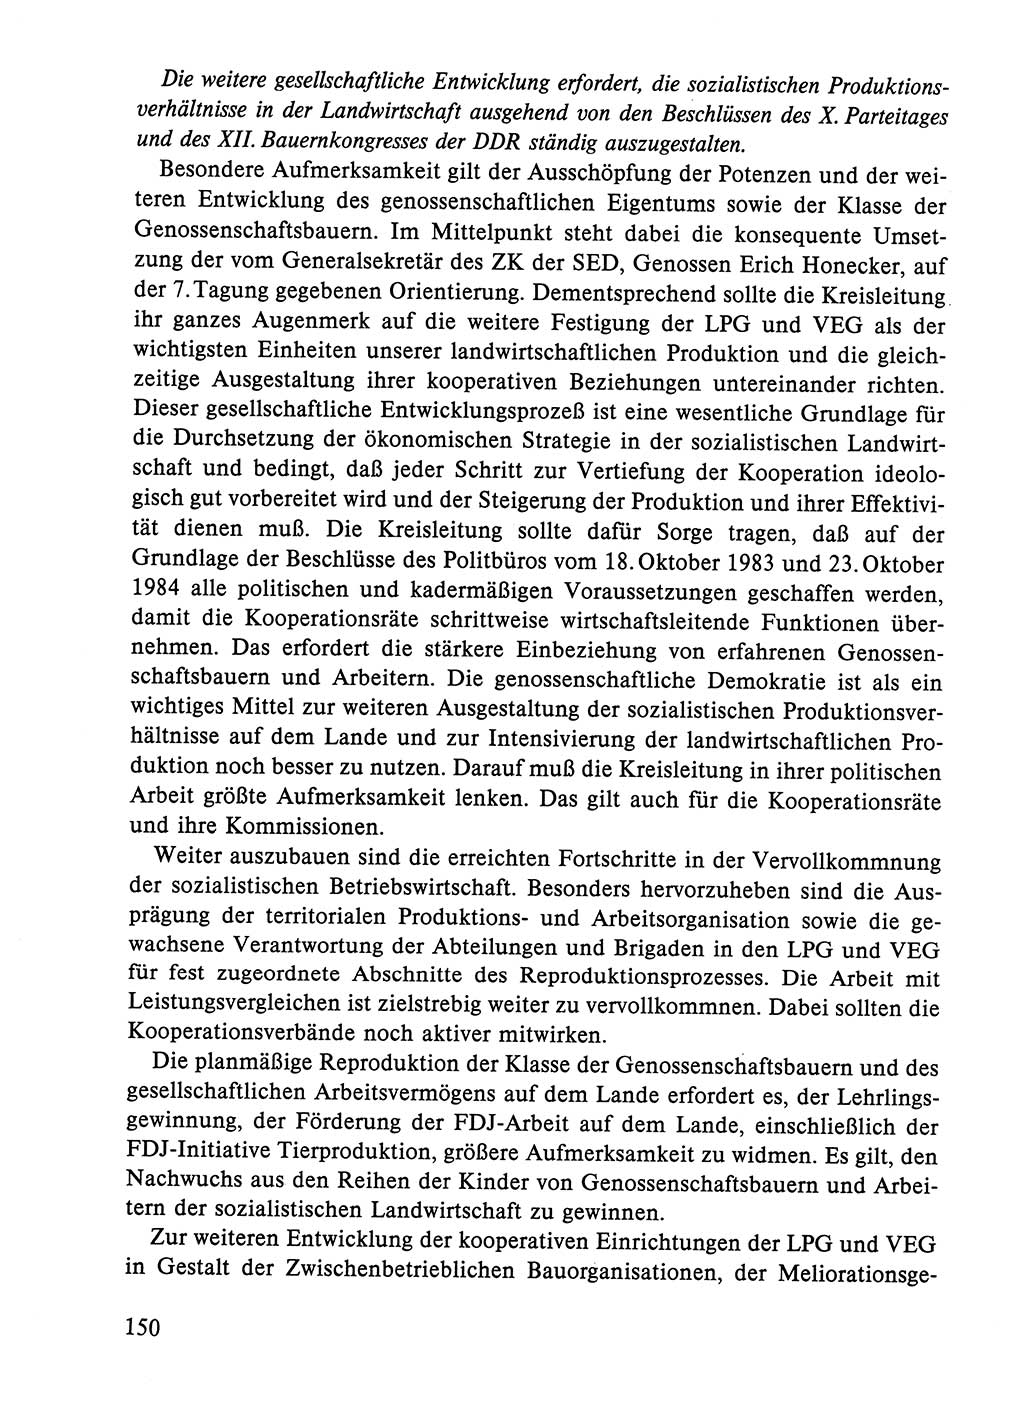 Dokumente der Sozialistischen Einheitspartei Deutschlands (SED) [Deutsche Demokratische Republik (DDR)] 1984-1985, Seite 277 (Dok. SED DDR 1984-1985, S. 277)